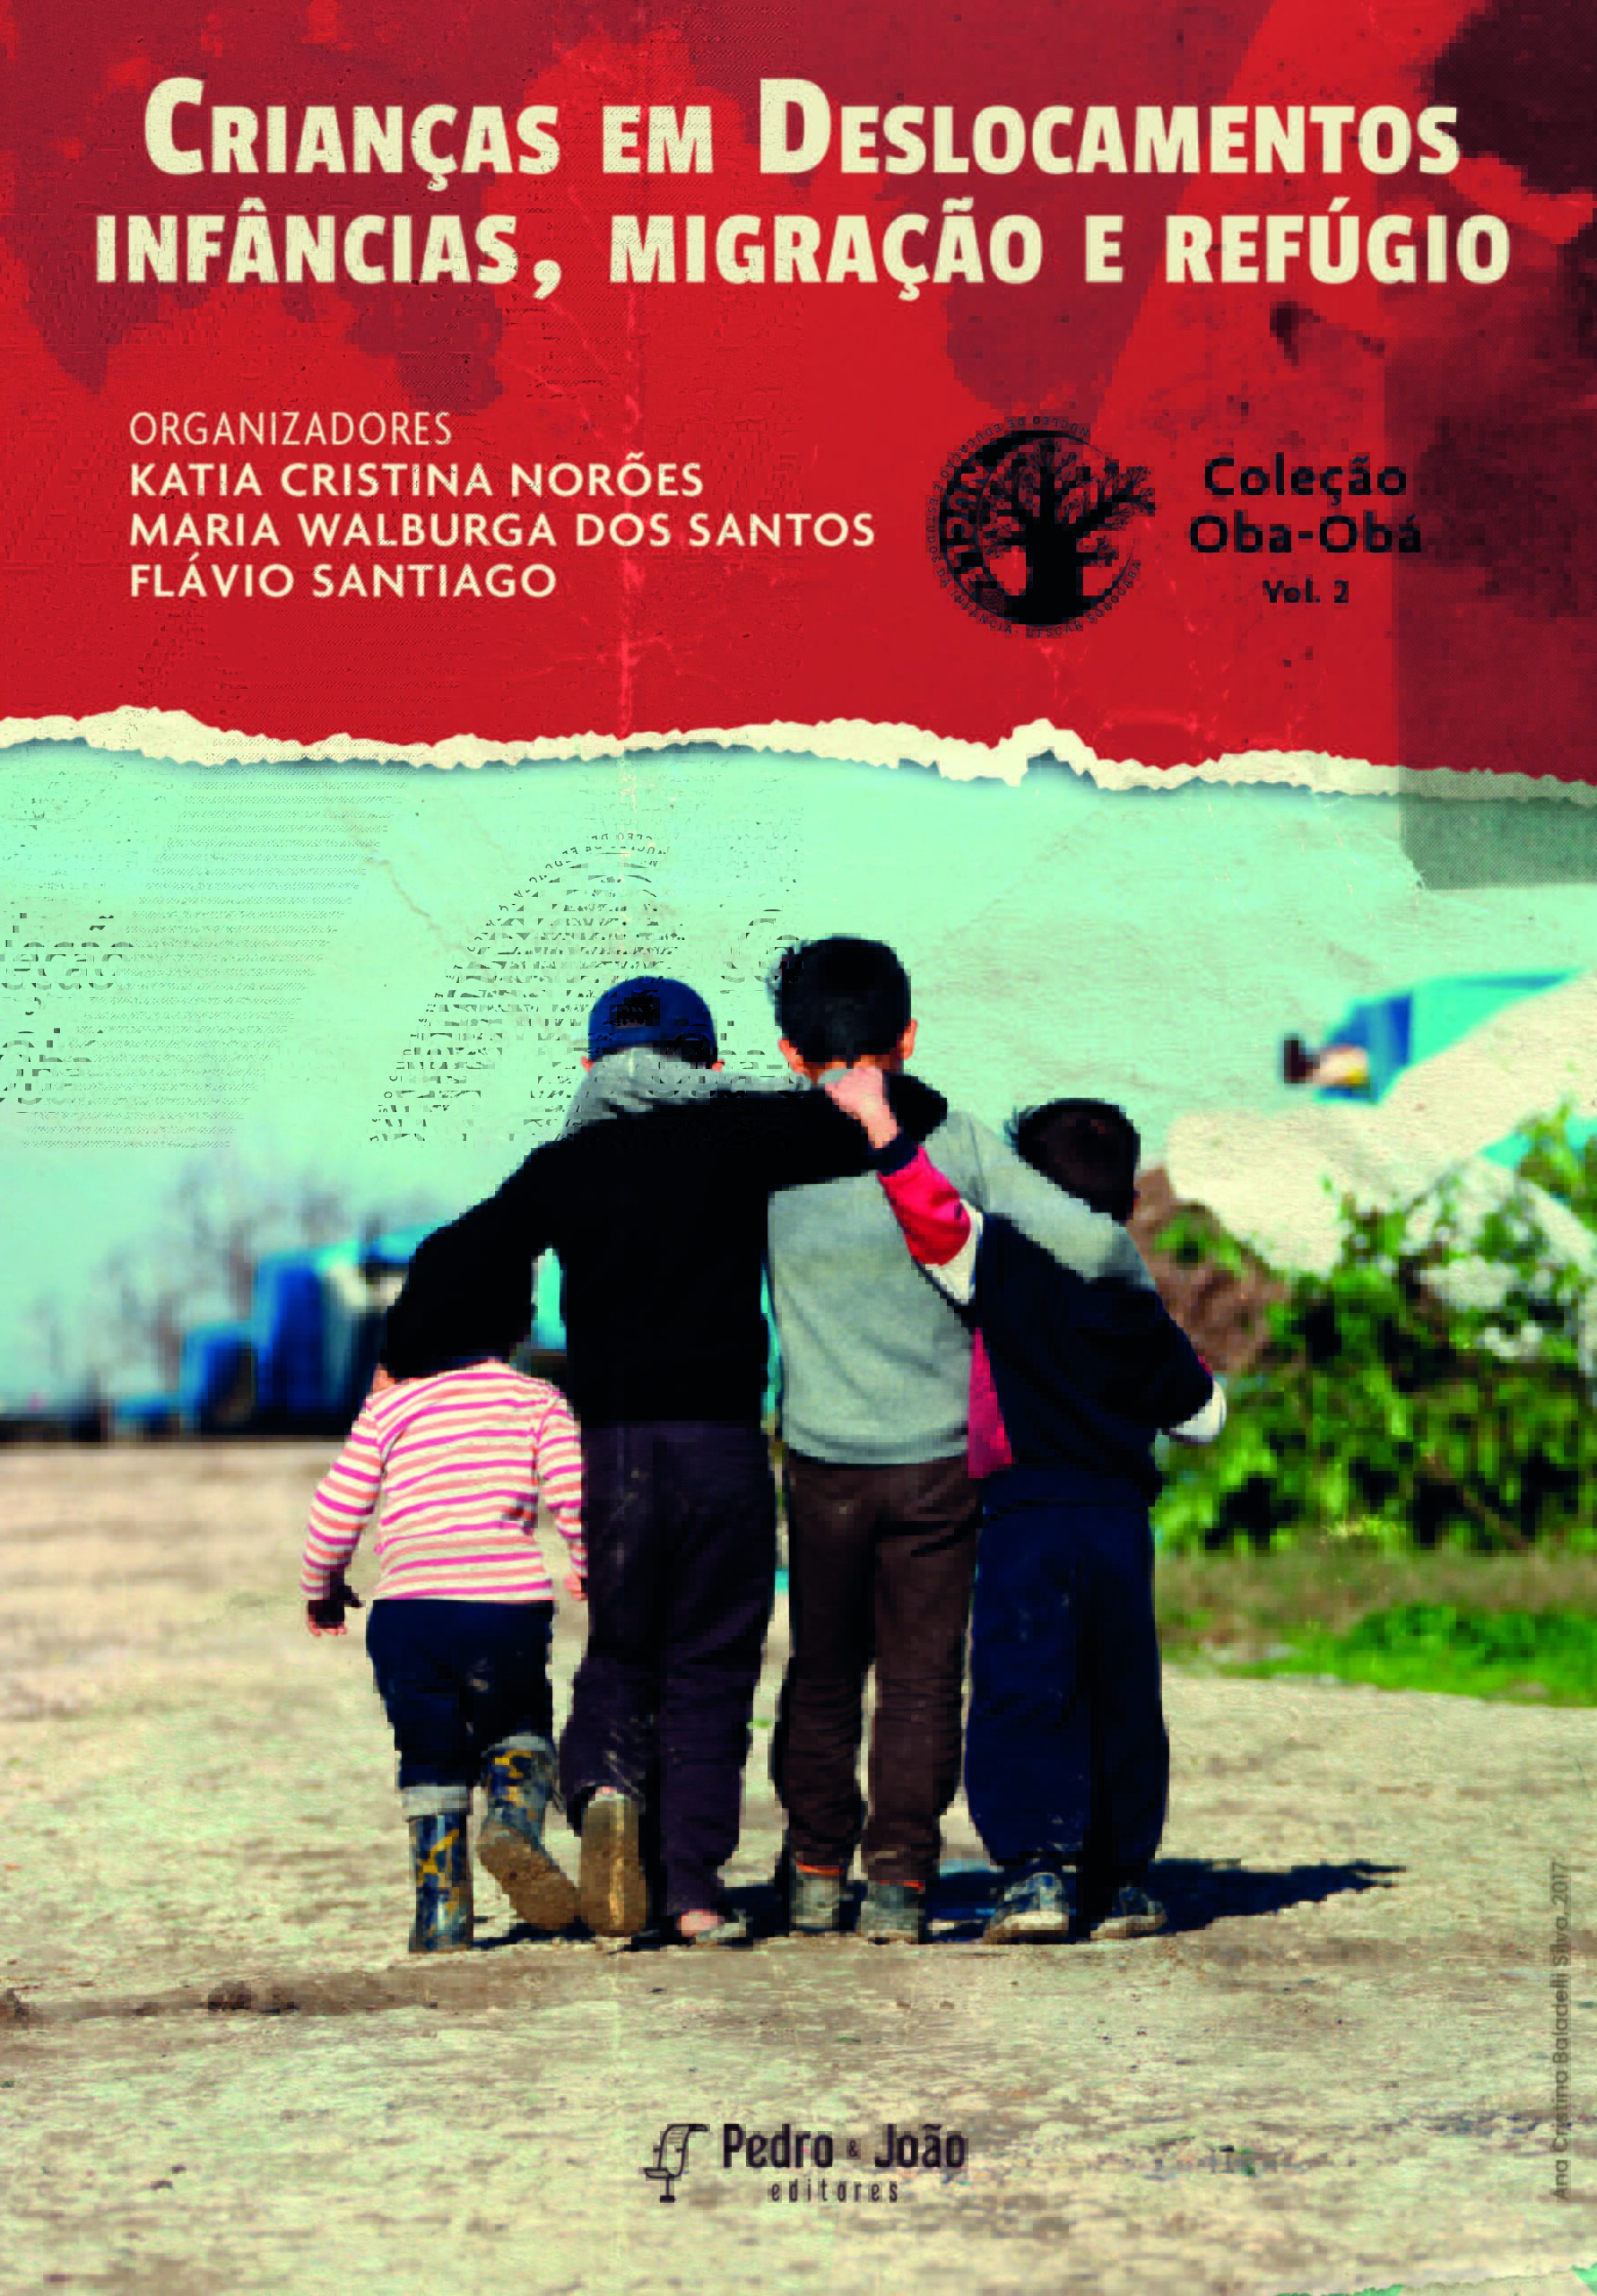 Crianças em deslocamentos: infâncias, migração e refúgio. Coleção Oba-Obá. Vol. 2.